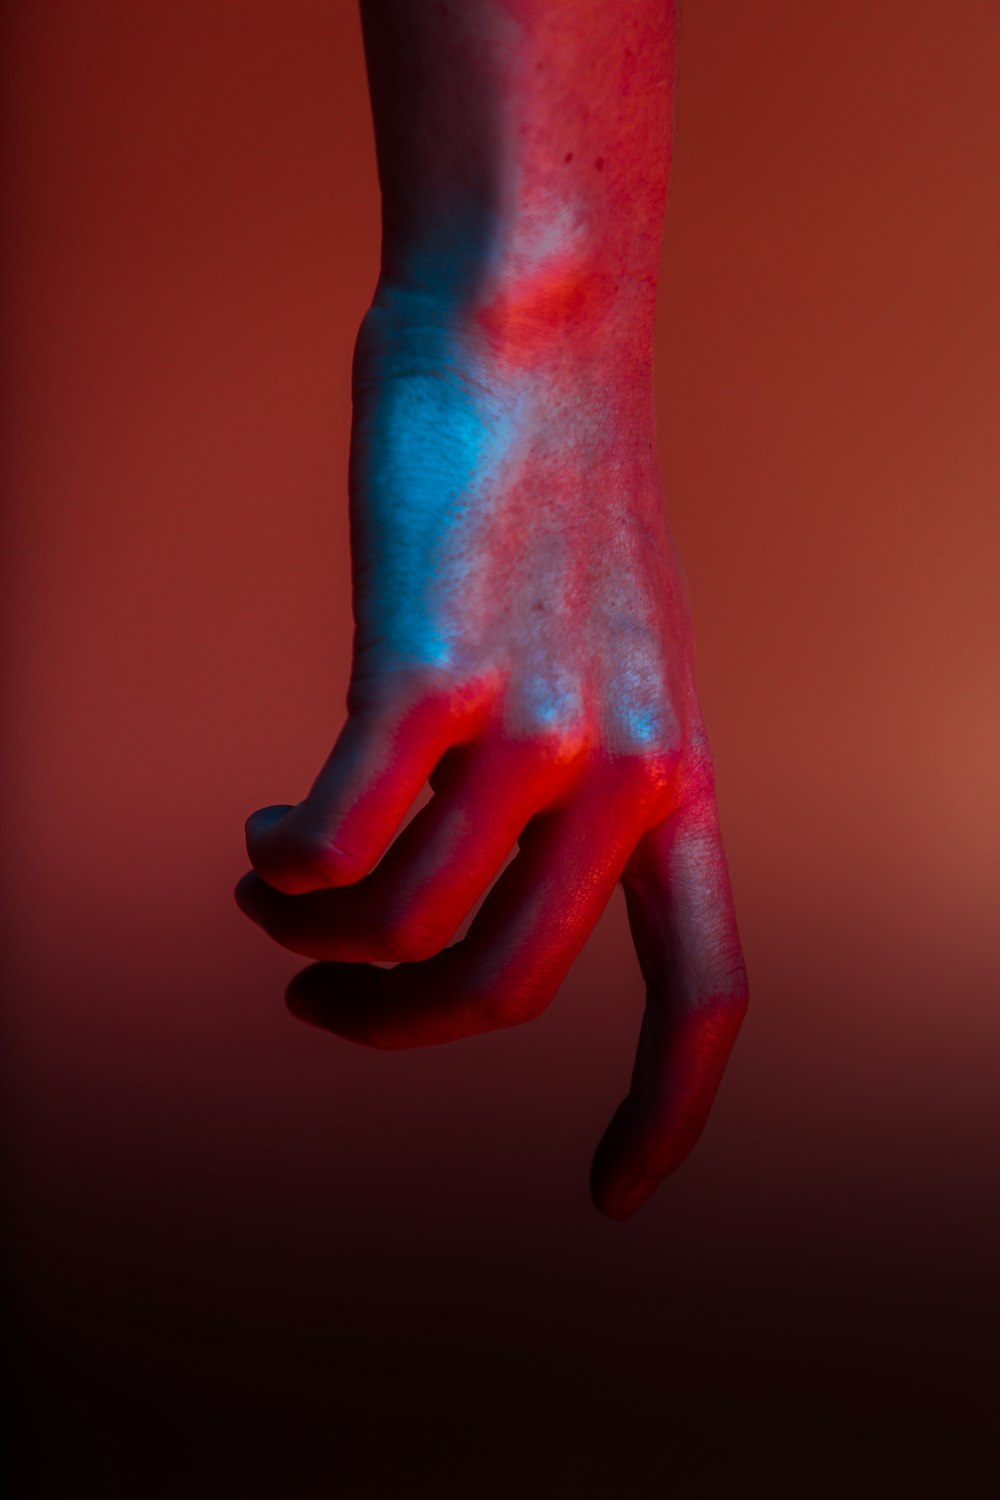 Flachfokusfotografie der Hand mit roter Farbe